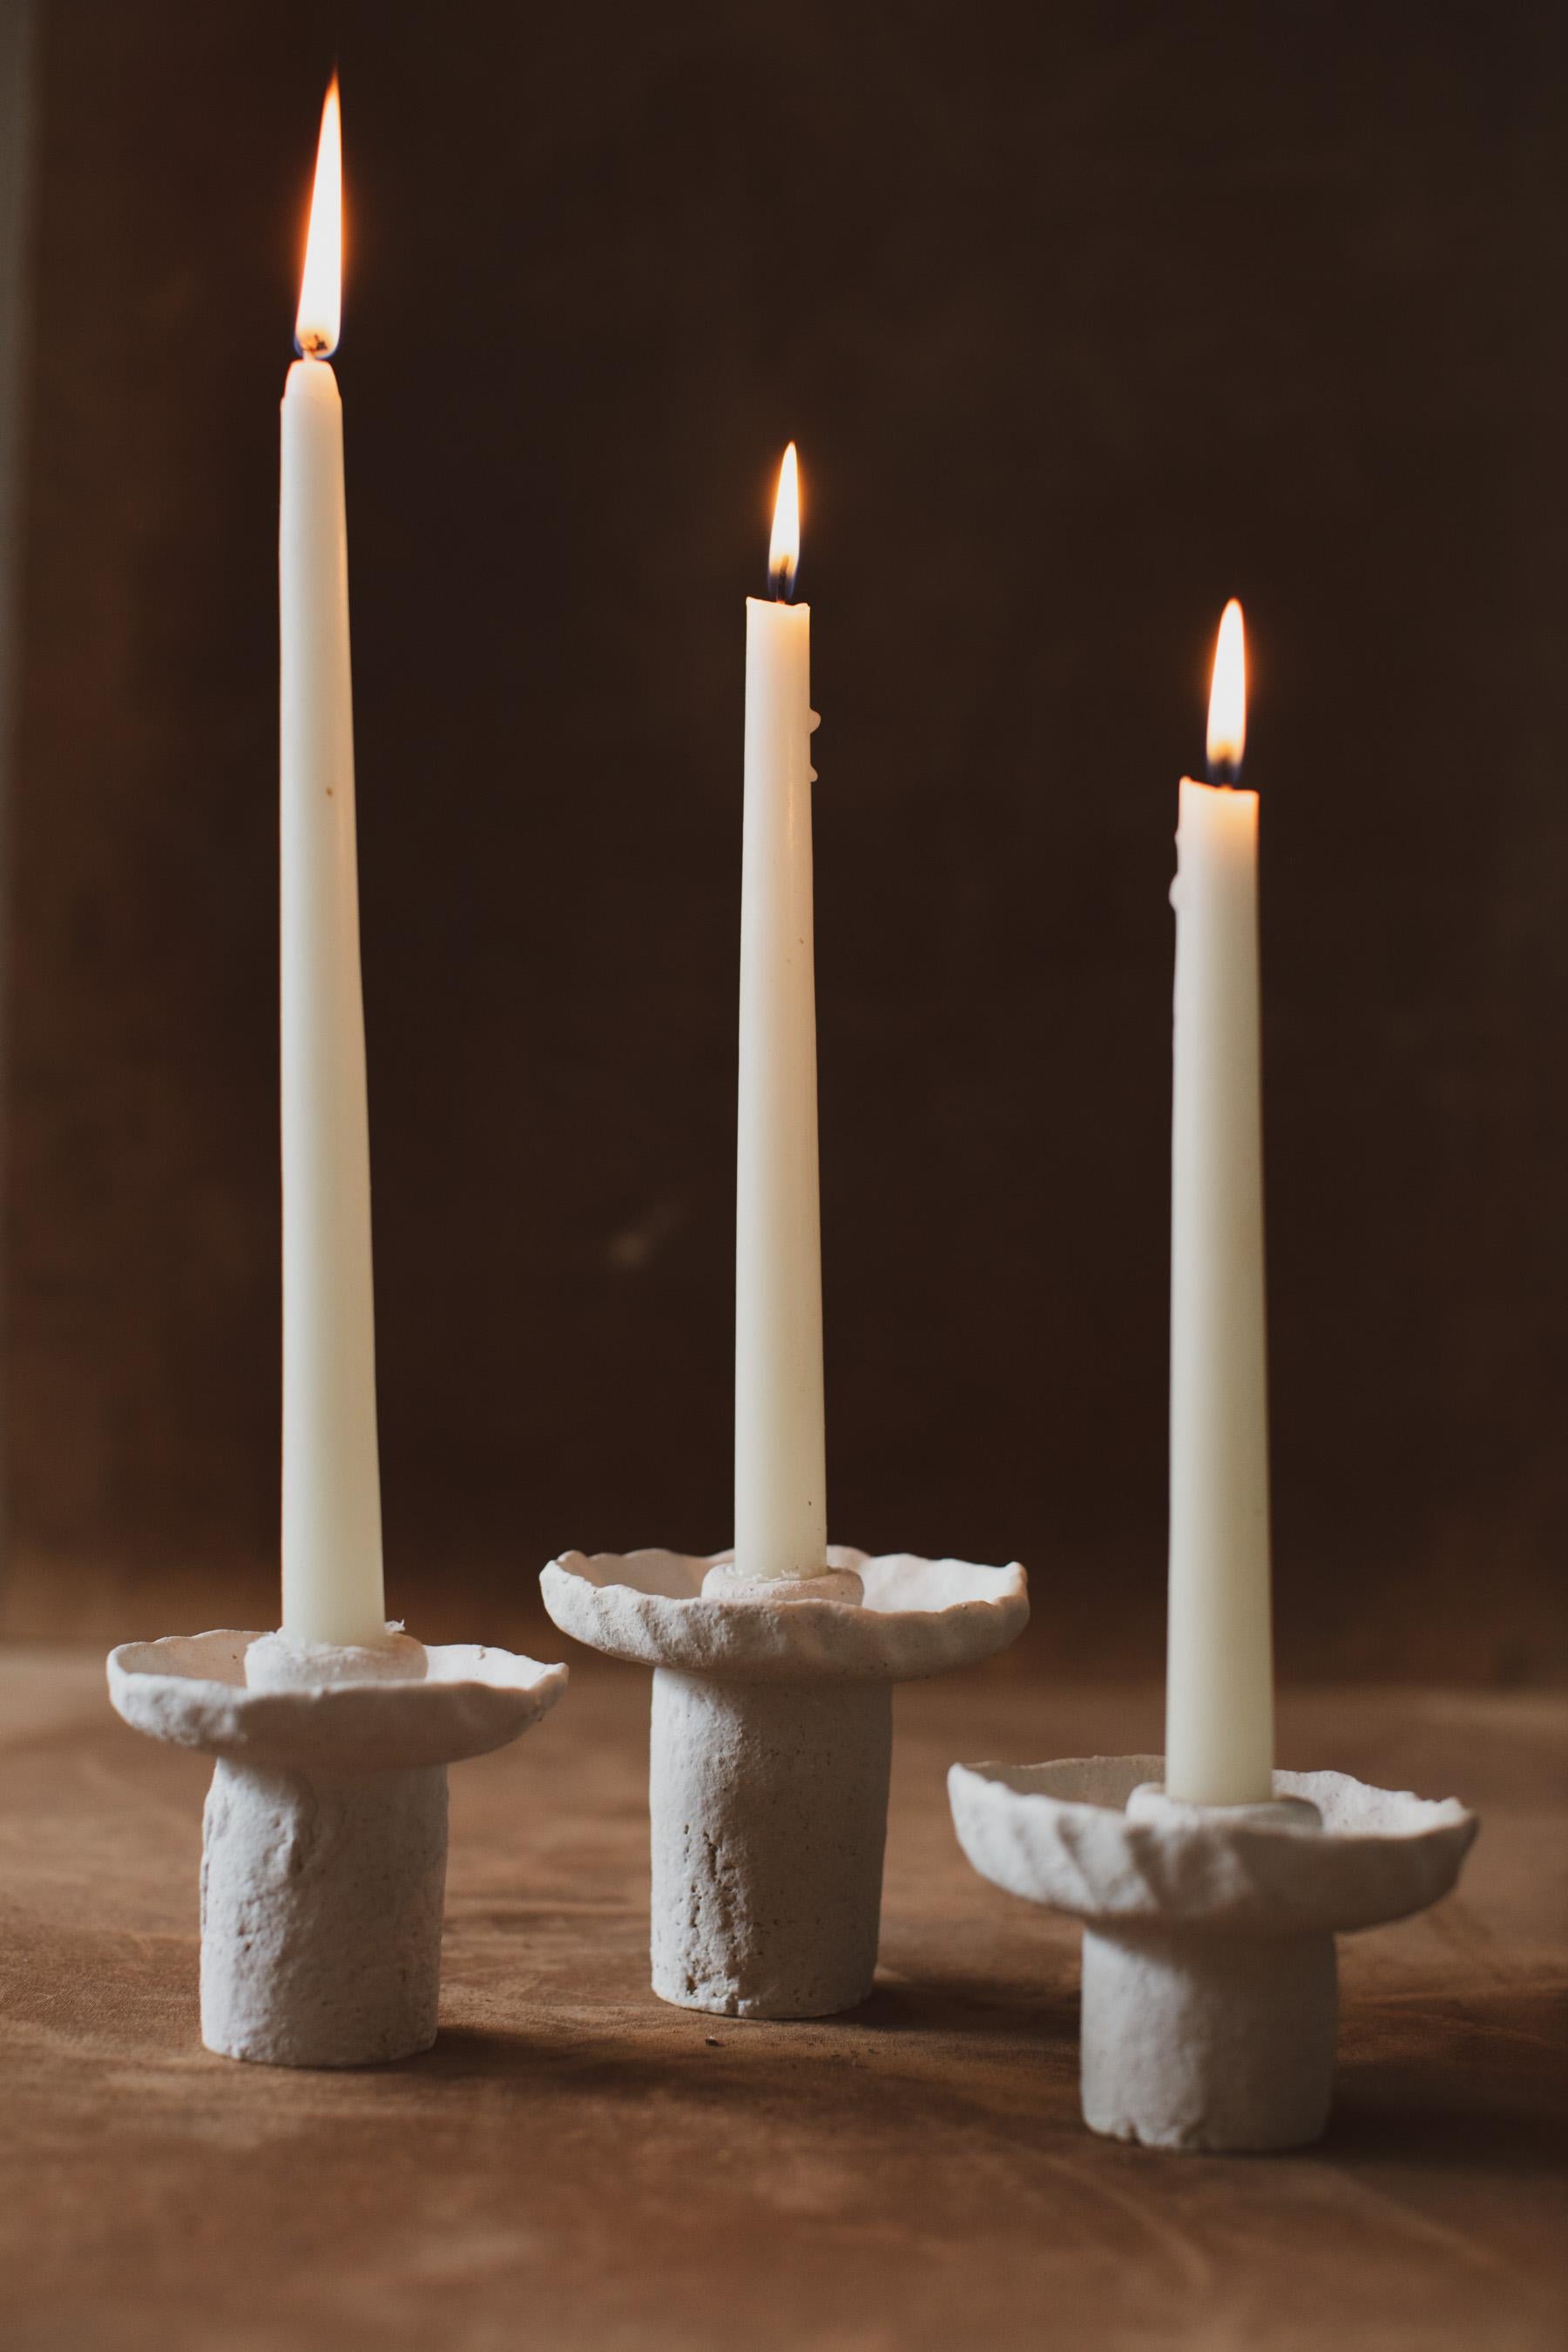 Diese Keramik-Kerzenhalter wurden von Ilona Golovina von Mugly.NYC in Brooklyn, NY, entworfen und handgefertigt. Sie verwendet eine Spulenbautechnik, um diese einzigartigen Stücke herzustellen. Jedes Stück ist ein Unikat, die Größen variieren.
Über